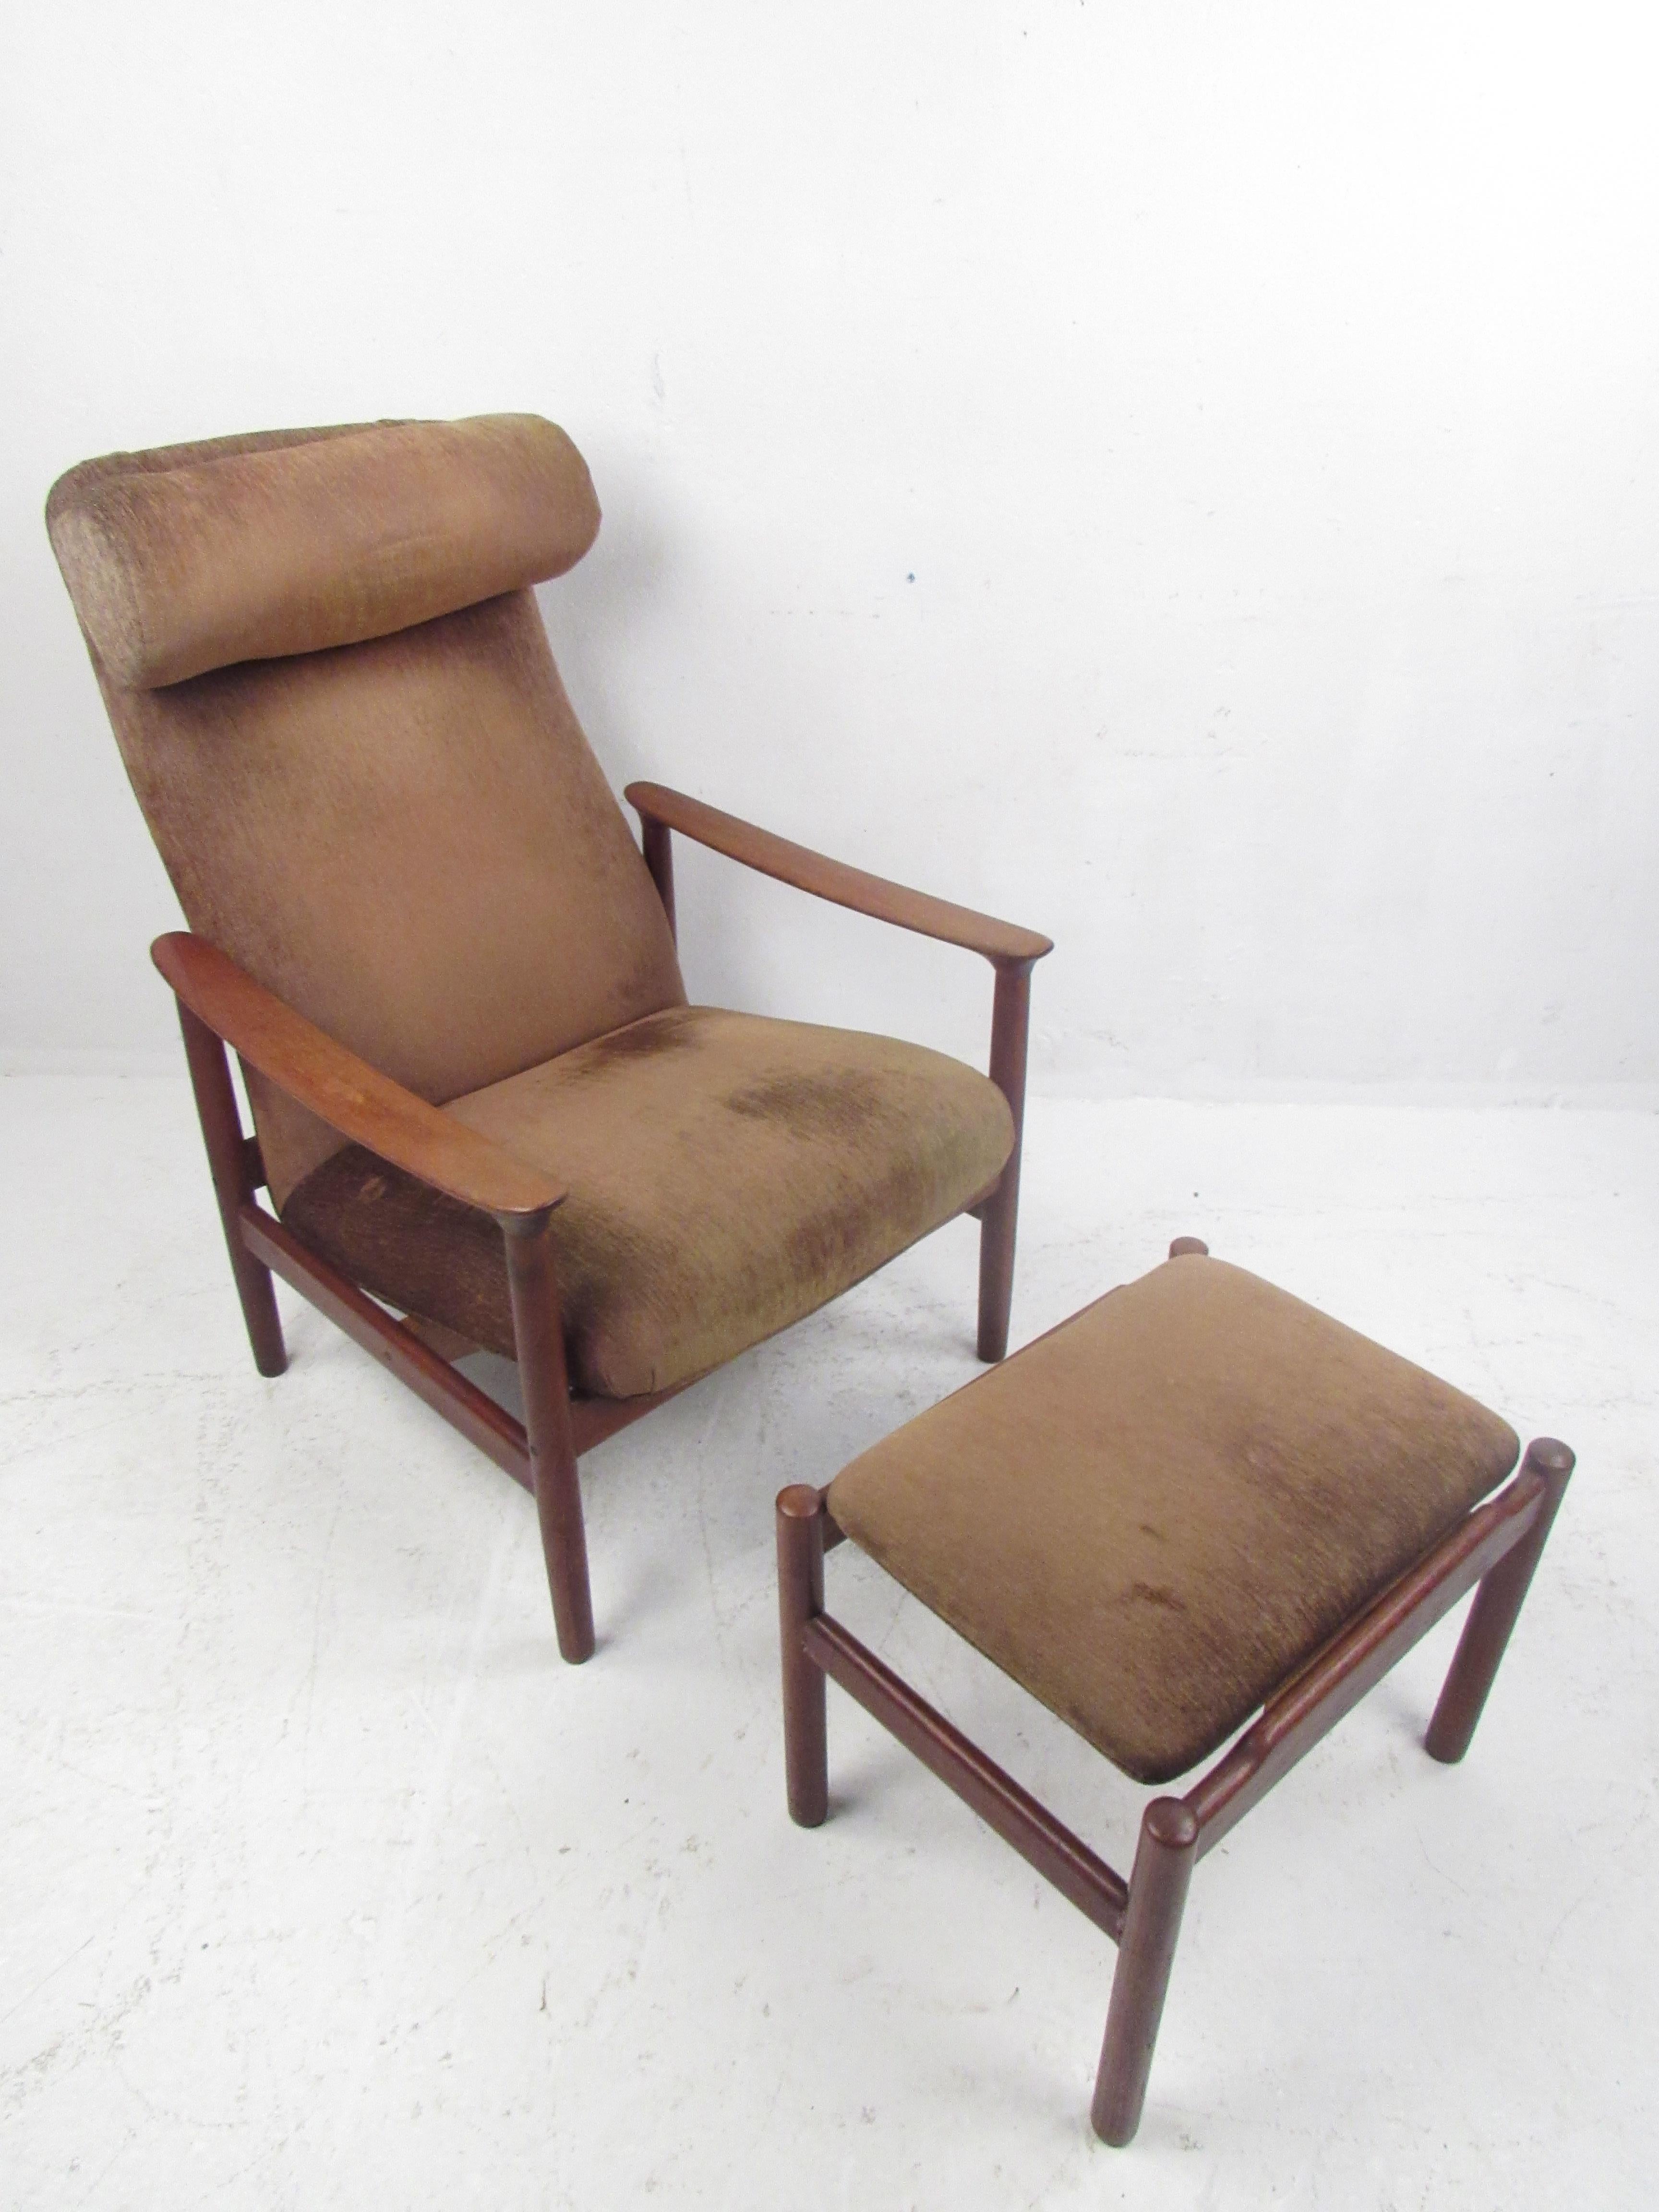 Dieser schöne moderne Sessel und die Ottomane im Vintage-Stil haben einen Rahmen aus geschnitztem Teakholz. Ein hübsches dänisches Design, das für Komfort sorgt, ohne bei der Sitzordnung auf Stil zu verzichten. Bitte bestätigen Sie den Standort des